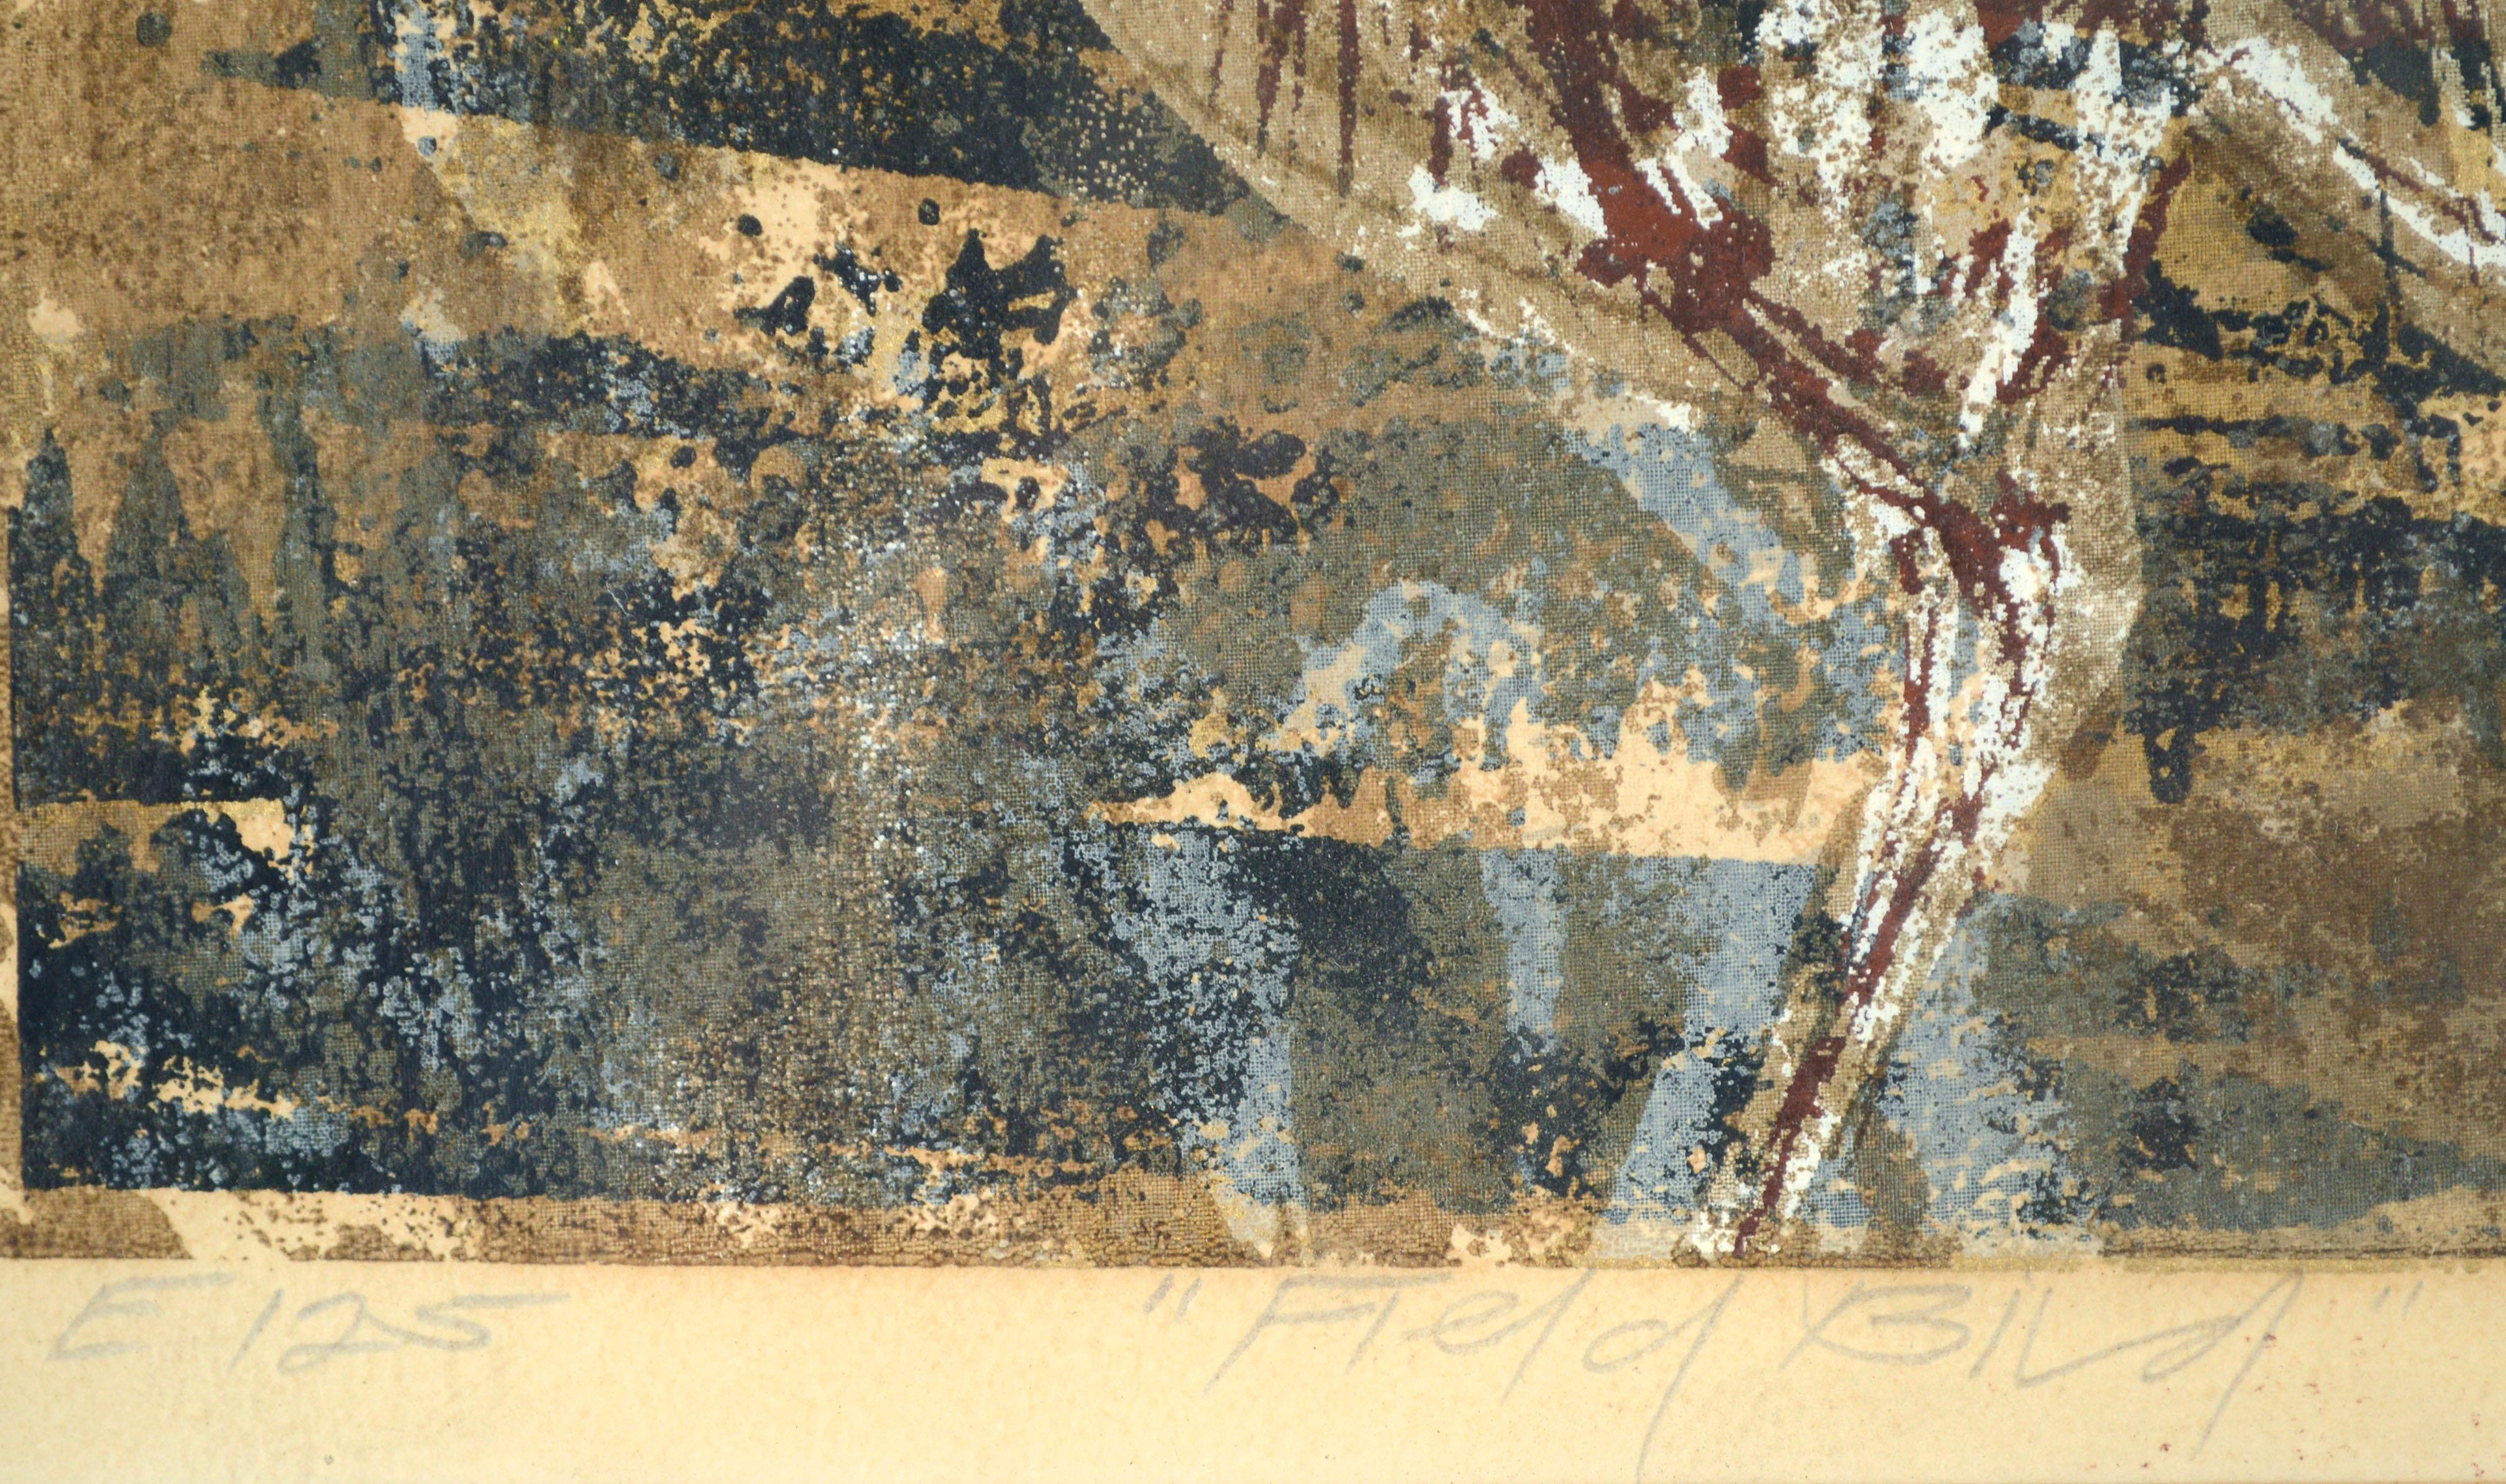 Sérigraphie abstraite moderne du milieu du siècle avec un oiseau par Howard Bradford (canadien/américain, 1919-2008), 1959. Cette impression abstraite figurative en édition limitée représente un oiseau blanc dans un espace abstrait composé de